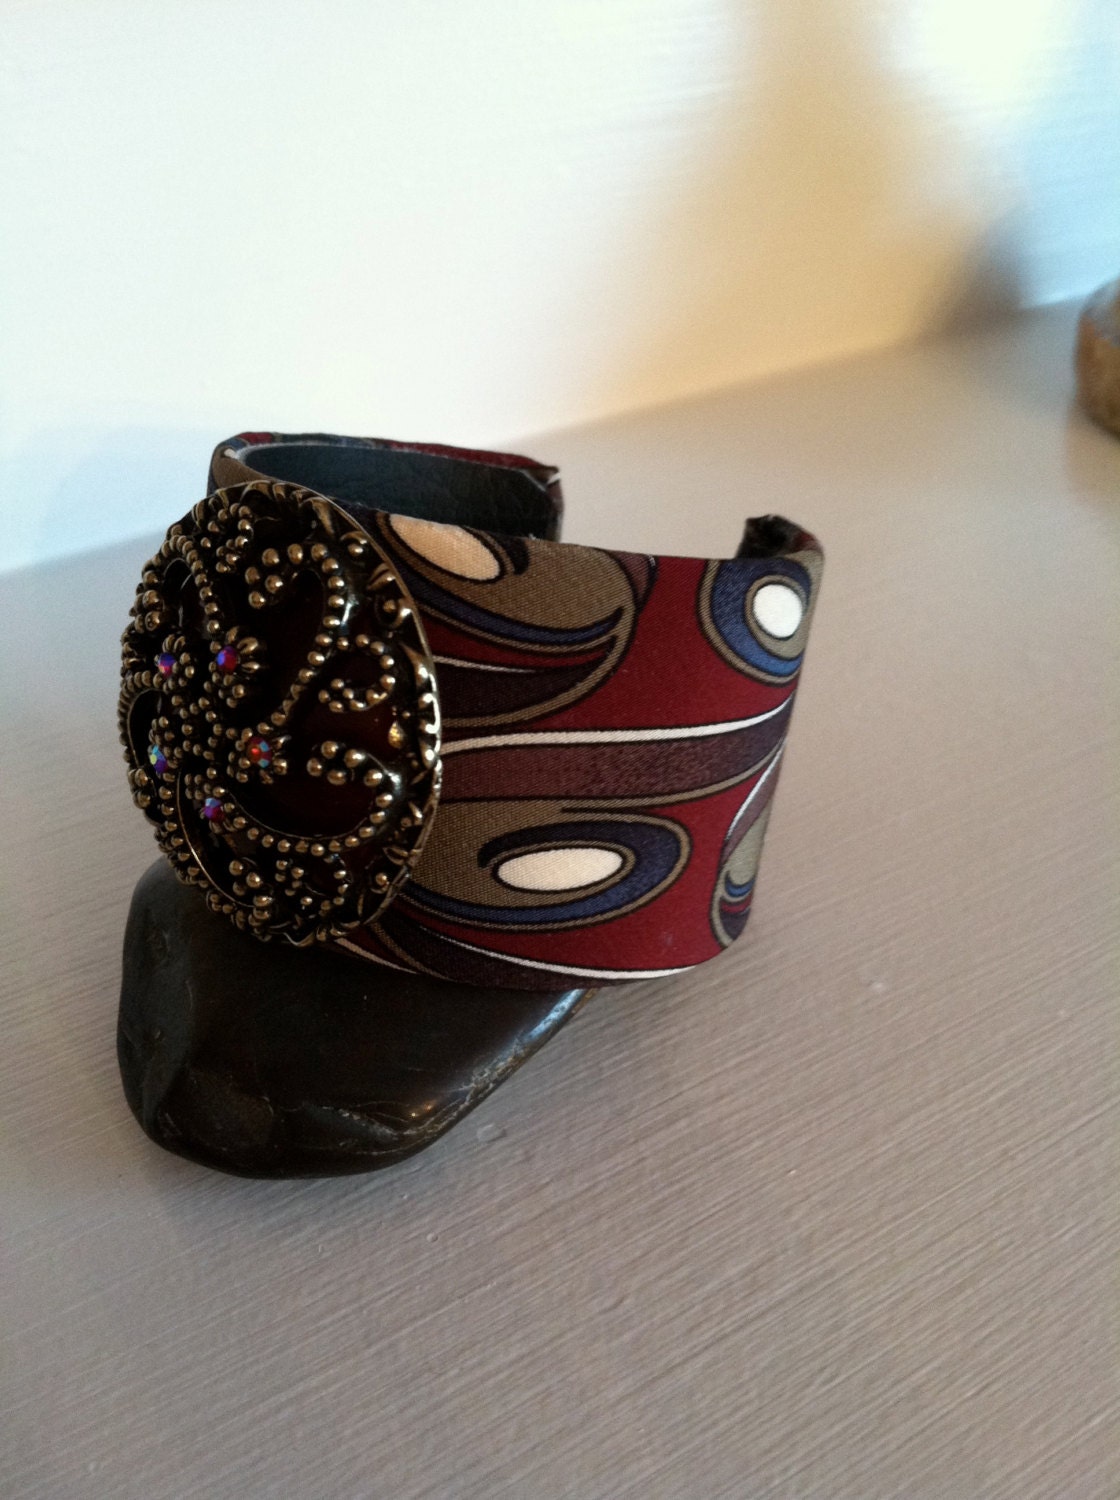 Deep red swirl pattern cuff bracelet - KathysCuffs